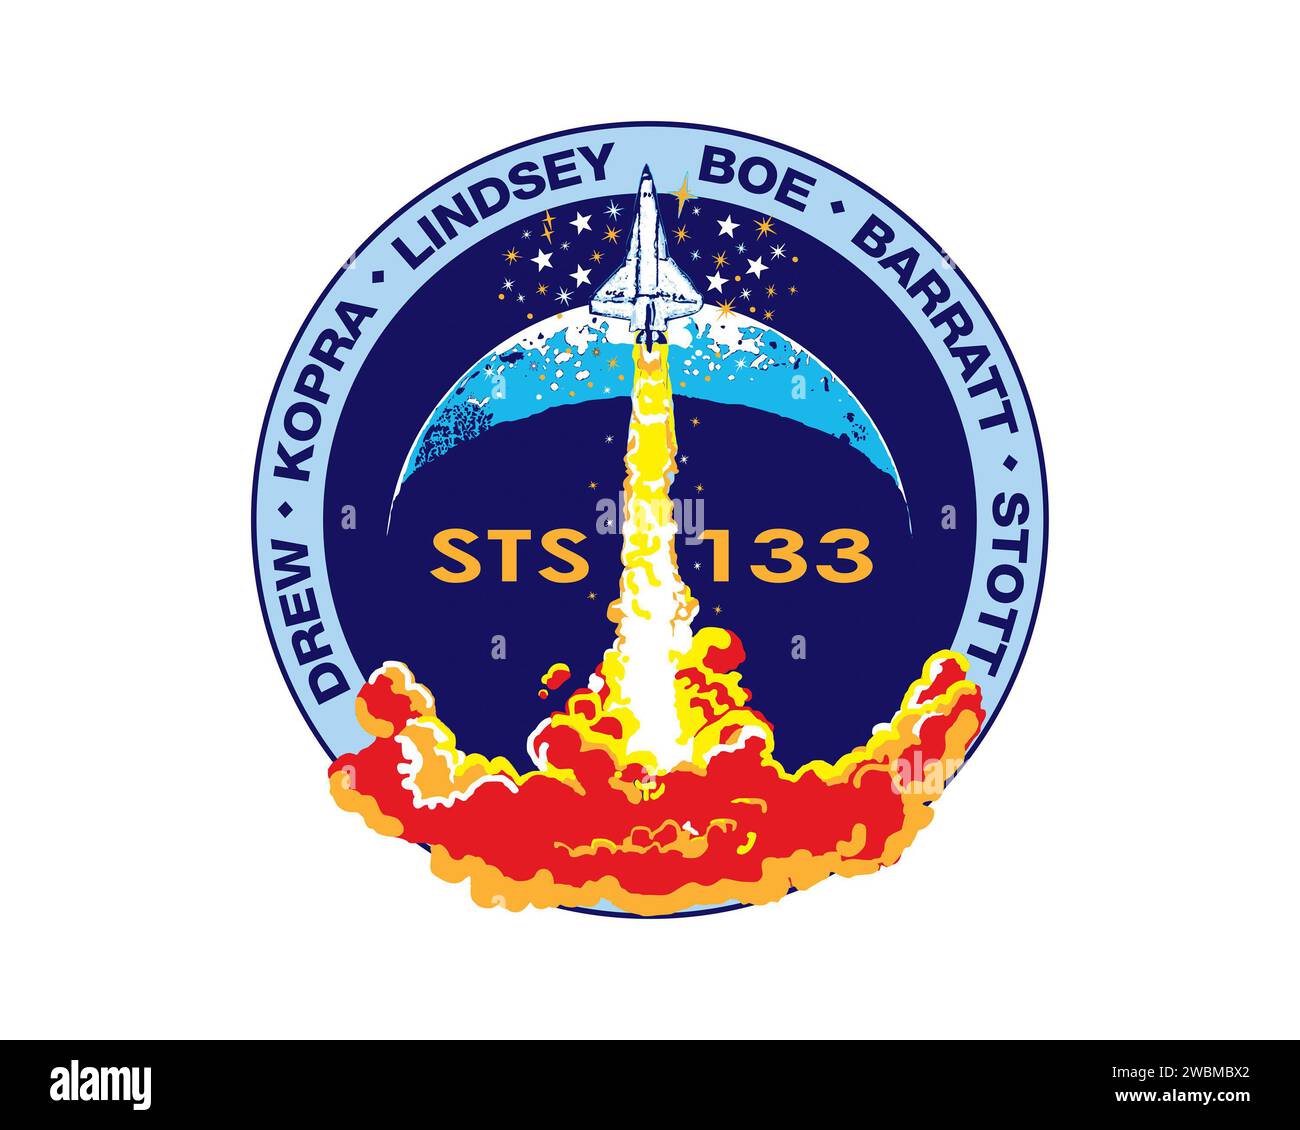 JOHNSON SPACE CENTER, Houston - STS133-S-001 ---- das STS-133 Mission Patch basiert auf Skizzen des verstorbenen Künstlers Robert McCall; sie waren die letzten Schöpfungen seiner langen und erstaunlichen Karriere. Im Vordergrund steigt ein einsamer Orbiter in einen dunkelblauen Himmel über einer feurigen Wolke auf. Ein Sternenstrahl umgibt den Orbiter und ein oberer Halbmond bildet den Hintergrund hinter dem Aufstieg. Die Missionsnummer STS-133 ist auf dem Patch Center verziert und die Namen der Besatzungsmitglieder sind an einem himmelblauen Rand um den Tatort herum aufgeführt. Der Shuttle Discovery ist auf einer Flamme A aufwärts dargestellt Stockfoto